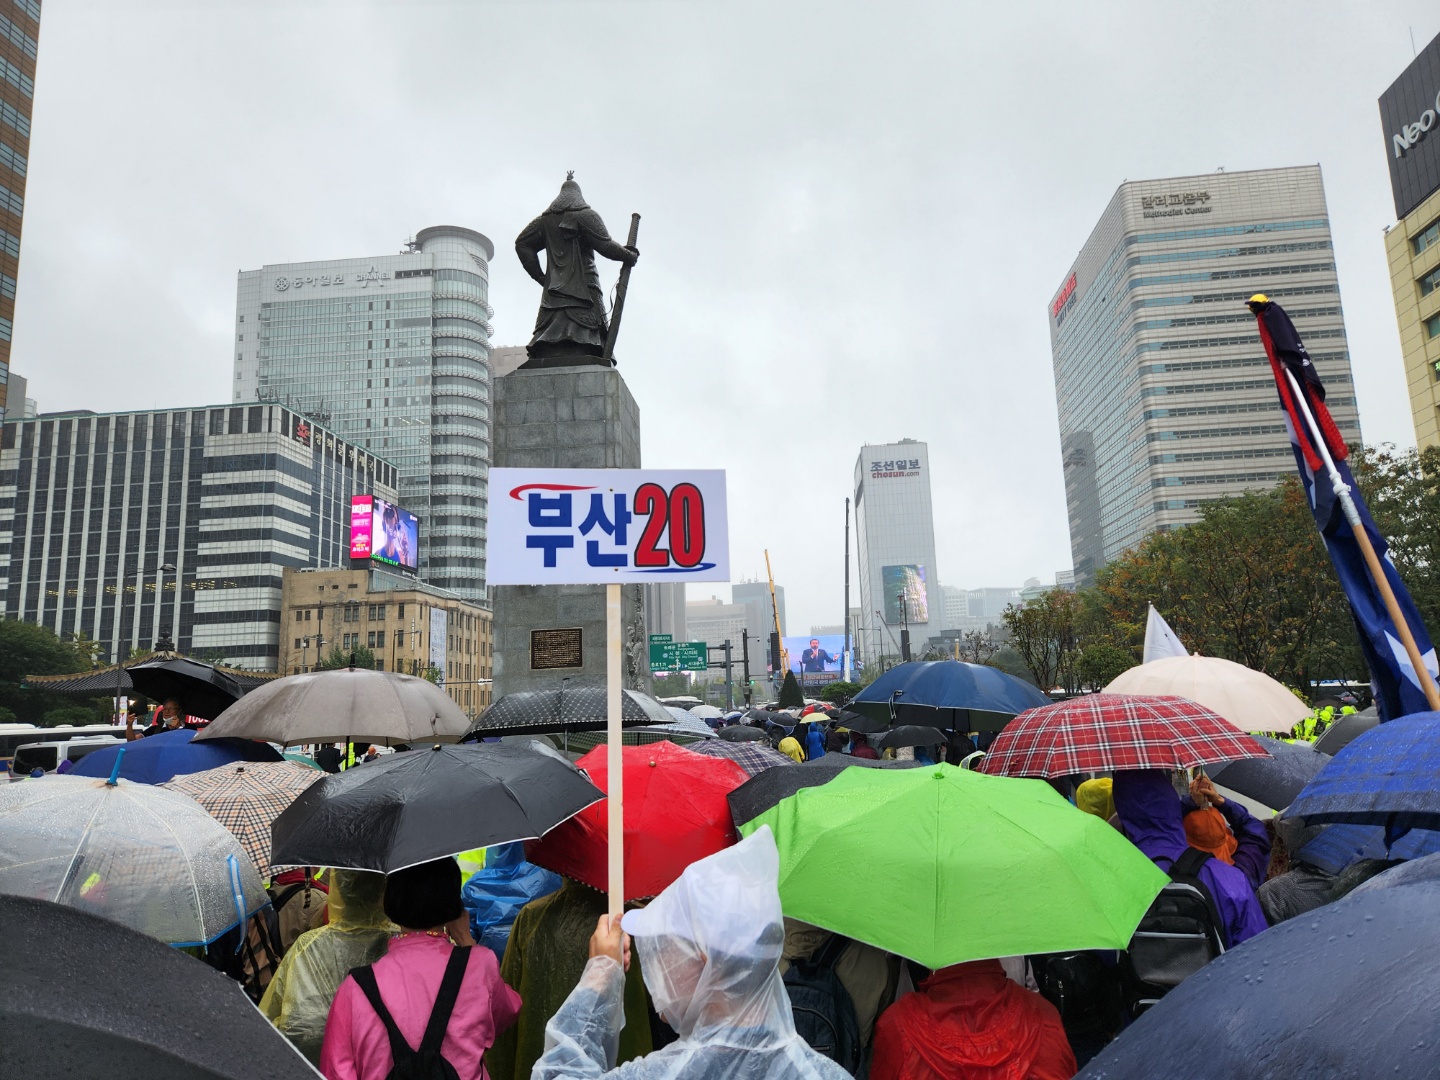 전광훈 사랑제일교회 목사가 이끄는 자유통일당의 ‘자유통일을 위한 천만서명 국민대회’가 열린 3일 오후 서울 종로구 광화문 광장에 집회 참가자들이 우산을 쓰고 모여있다. 곽소영 기자